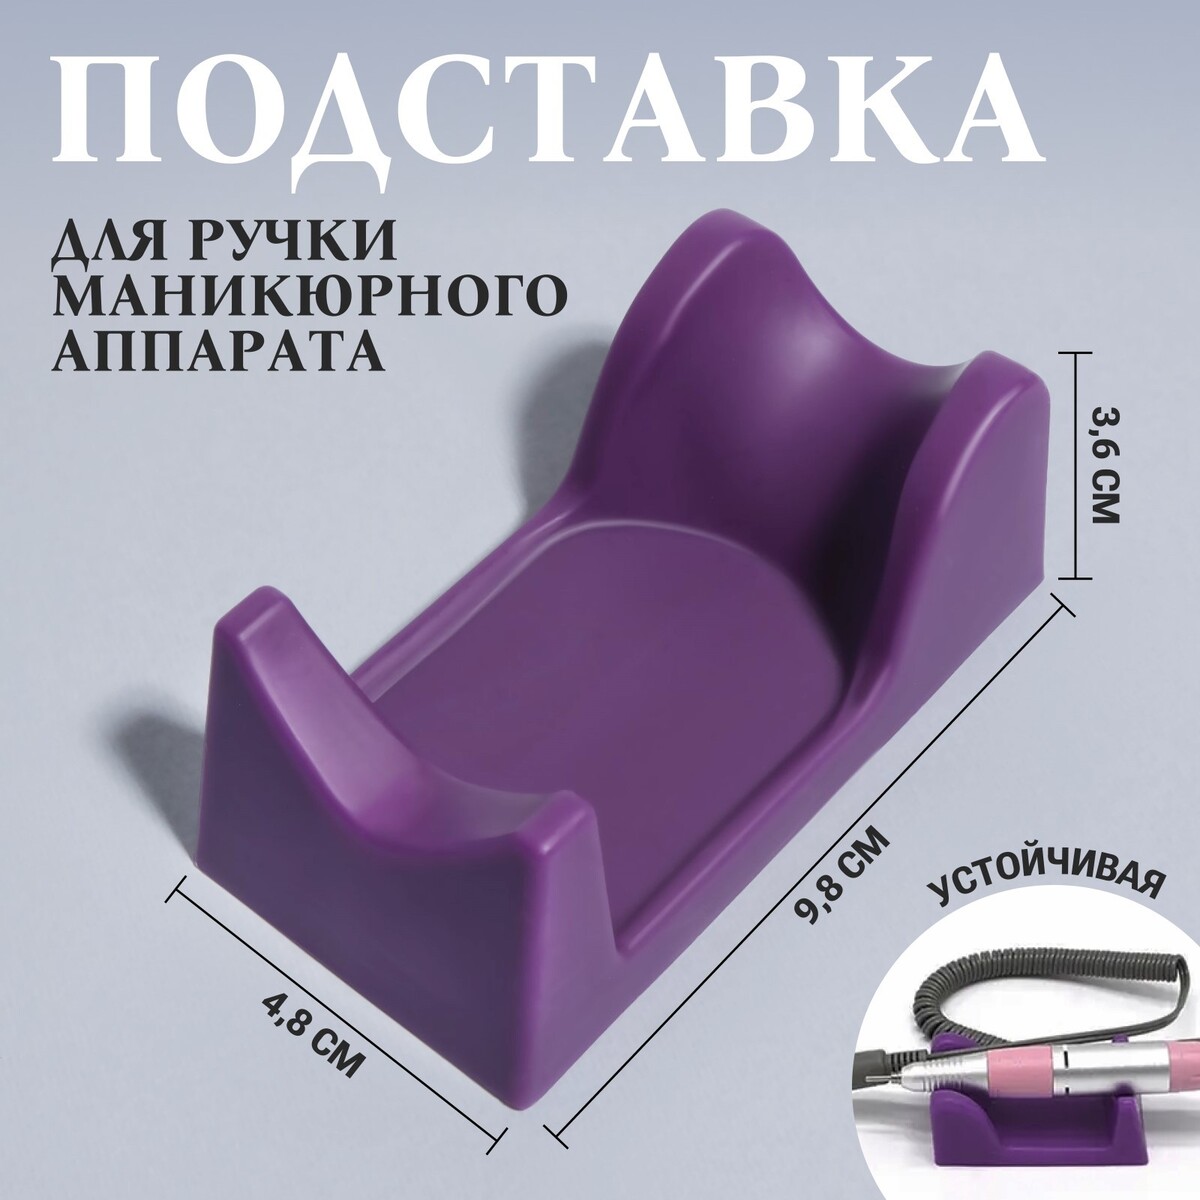 Подставка для ручки маникюрного аппарата, 9,8 × 4,8 × 3,6 см, цвет фиолетовый подставка под ручки